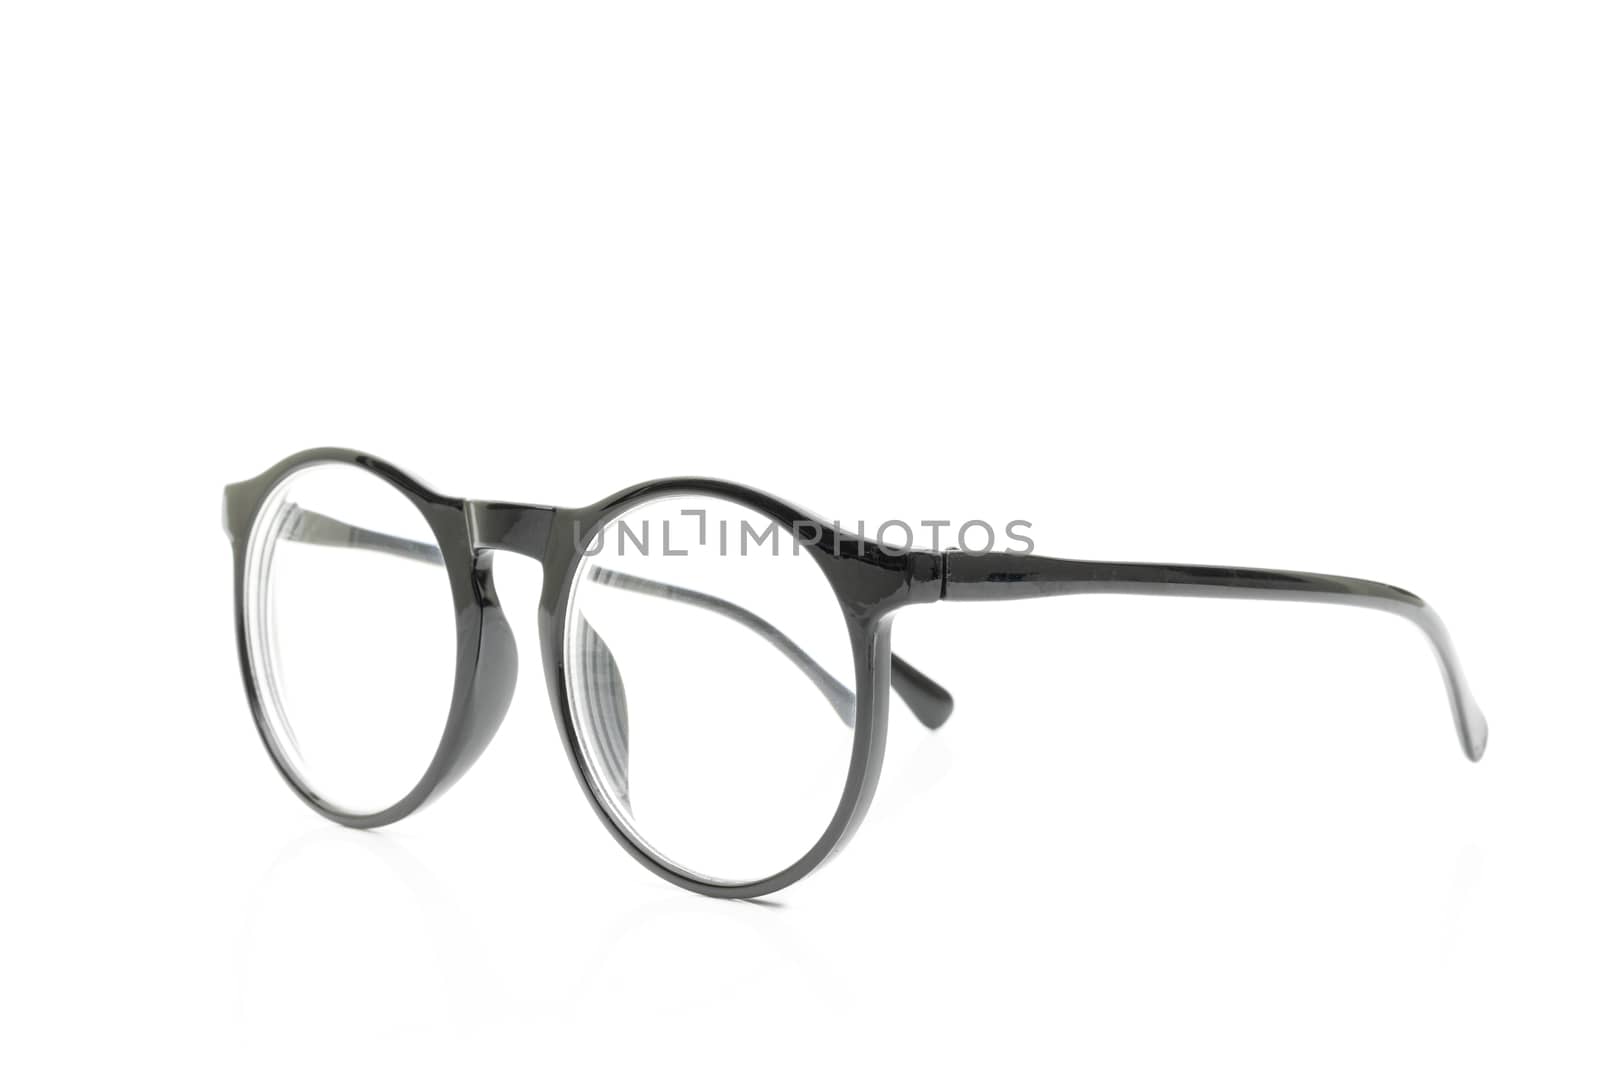 Glasses black on white background by sompongtom